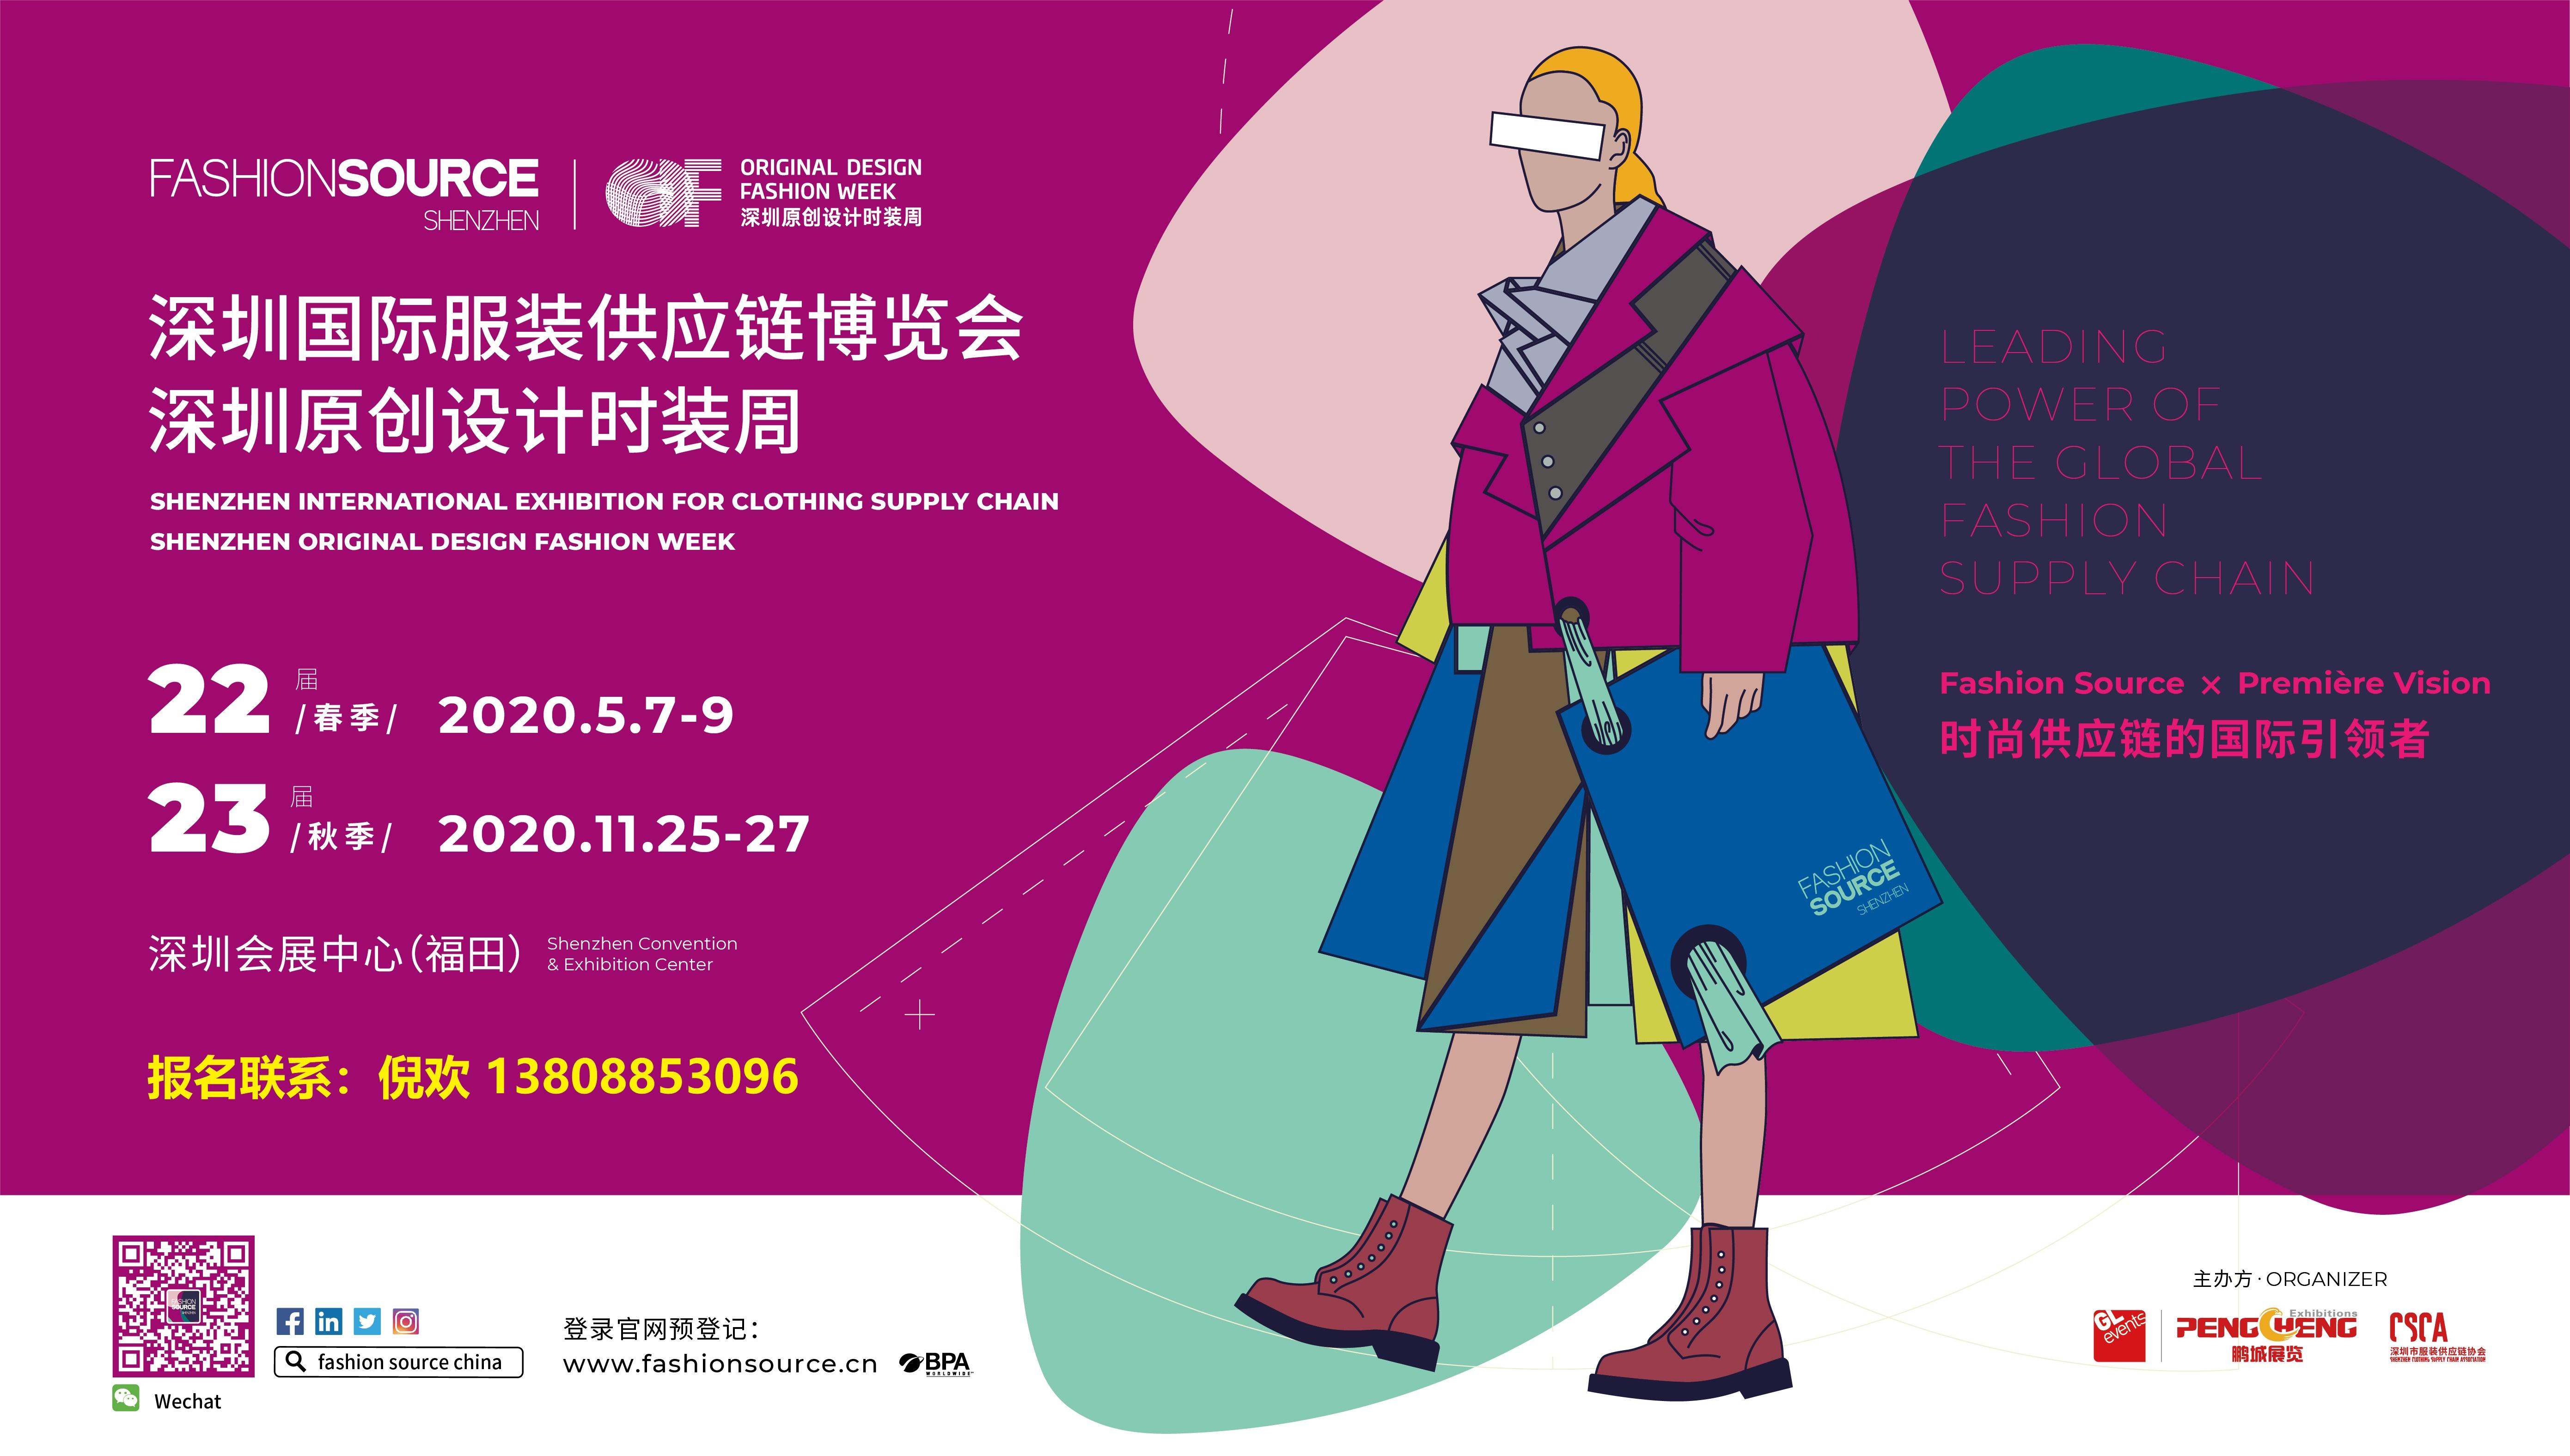 FS2020深圳国际服装供应链博览会(秋季)/深圳原创设计时装周